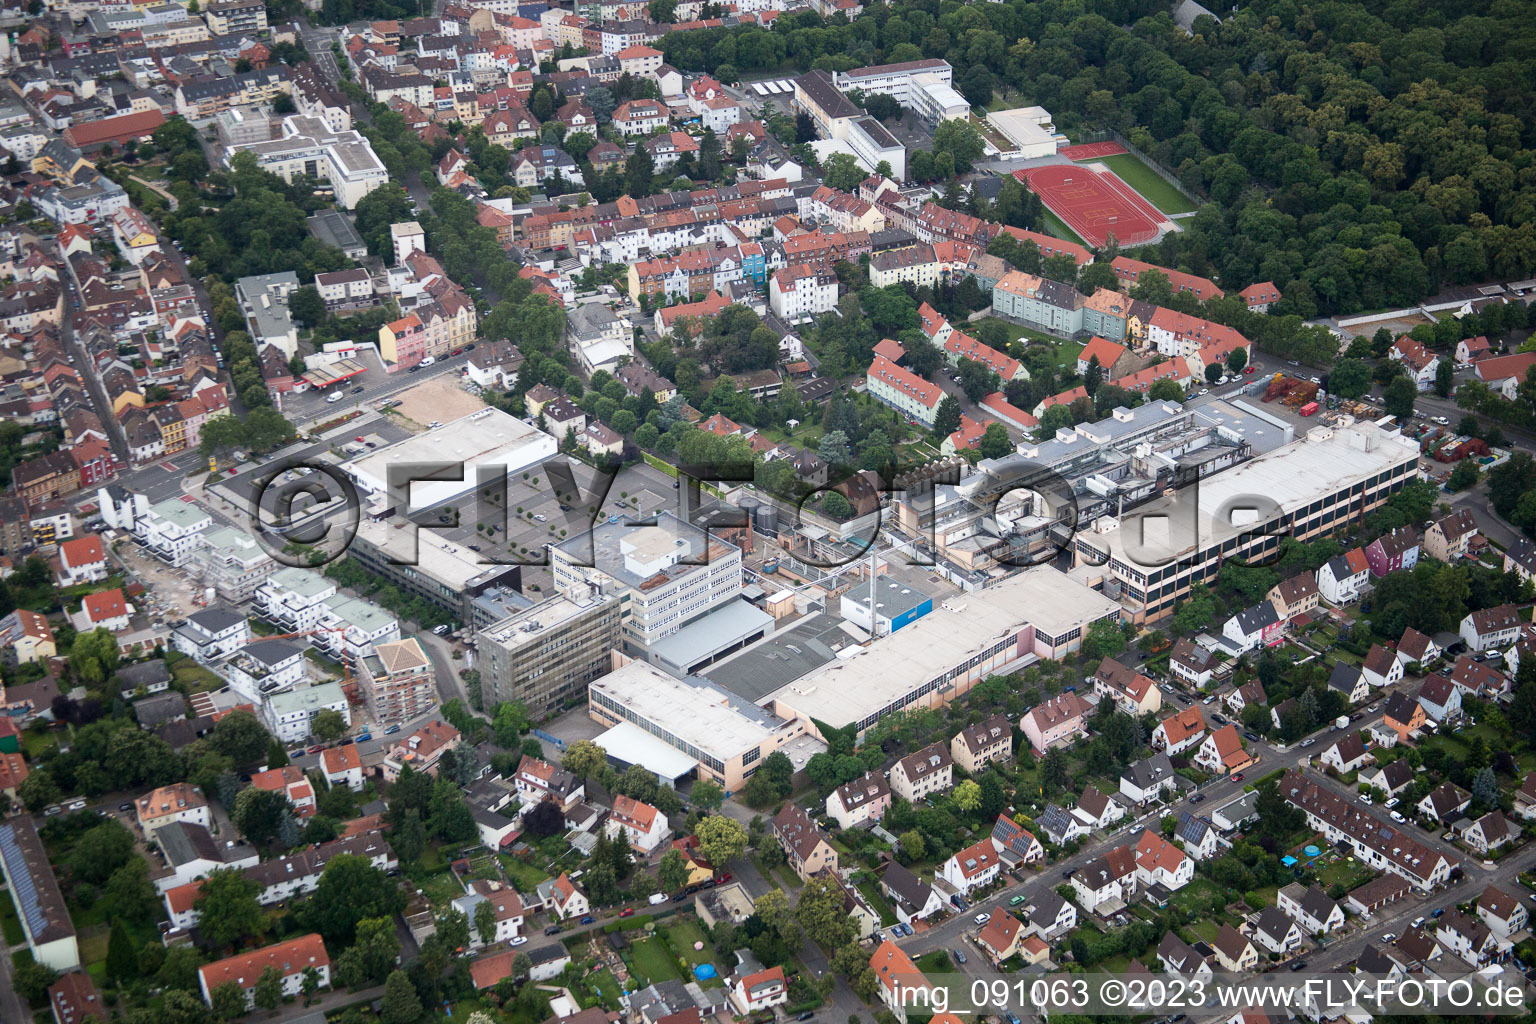 Luftbild von RENOLIT SE in Frankenthal im Bundesland Rheinland-Pfalz, Deutschland